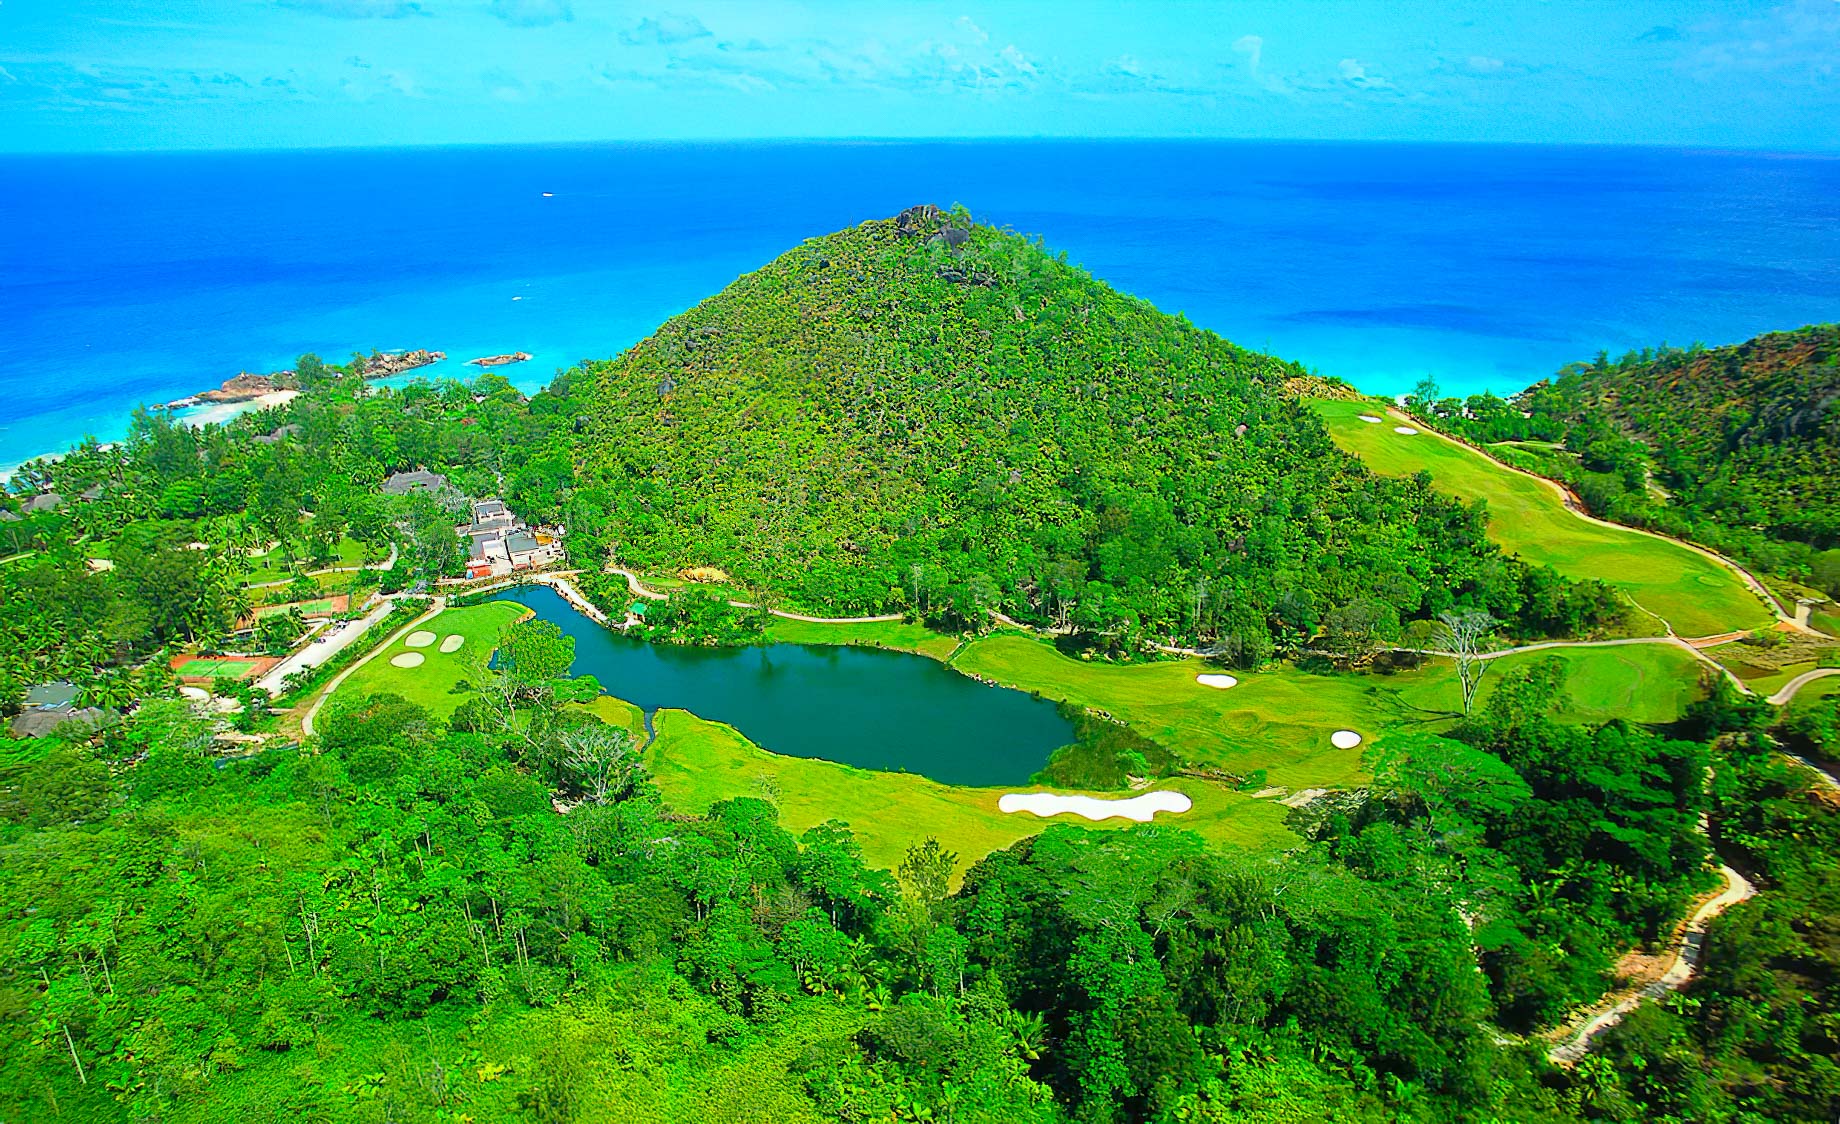 Constance Lemuria Resort – Praslin, Seychelles – Golf Course Aerial View